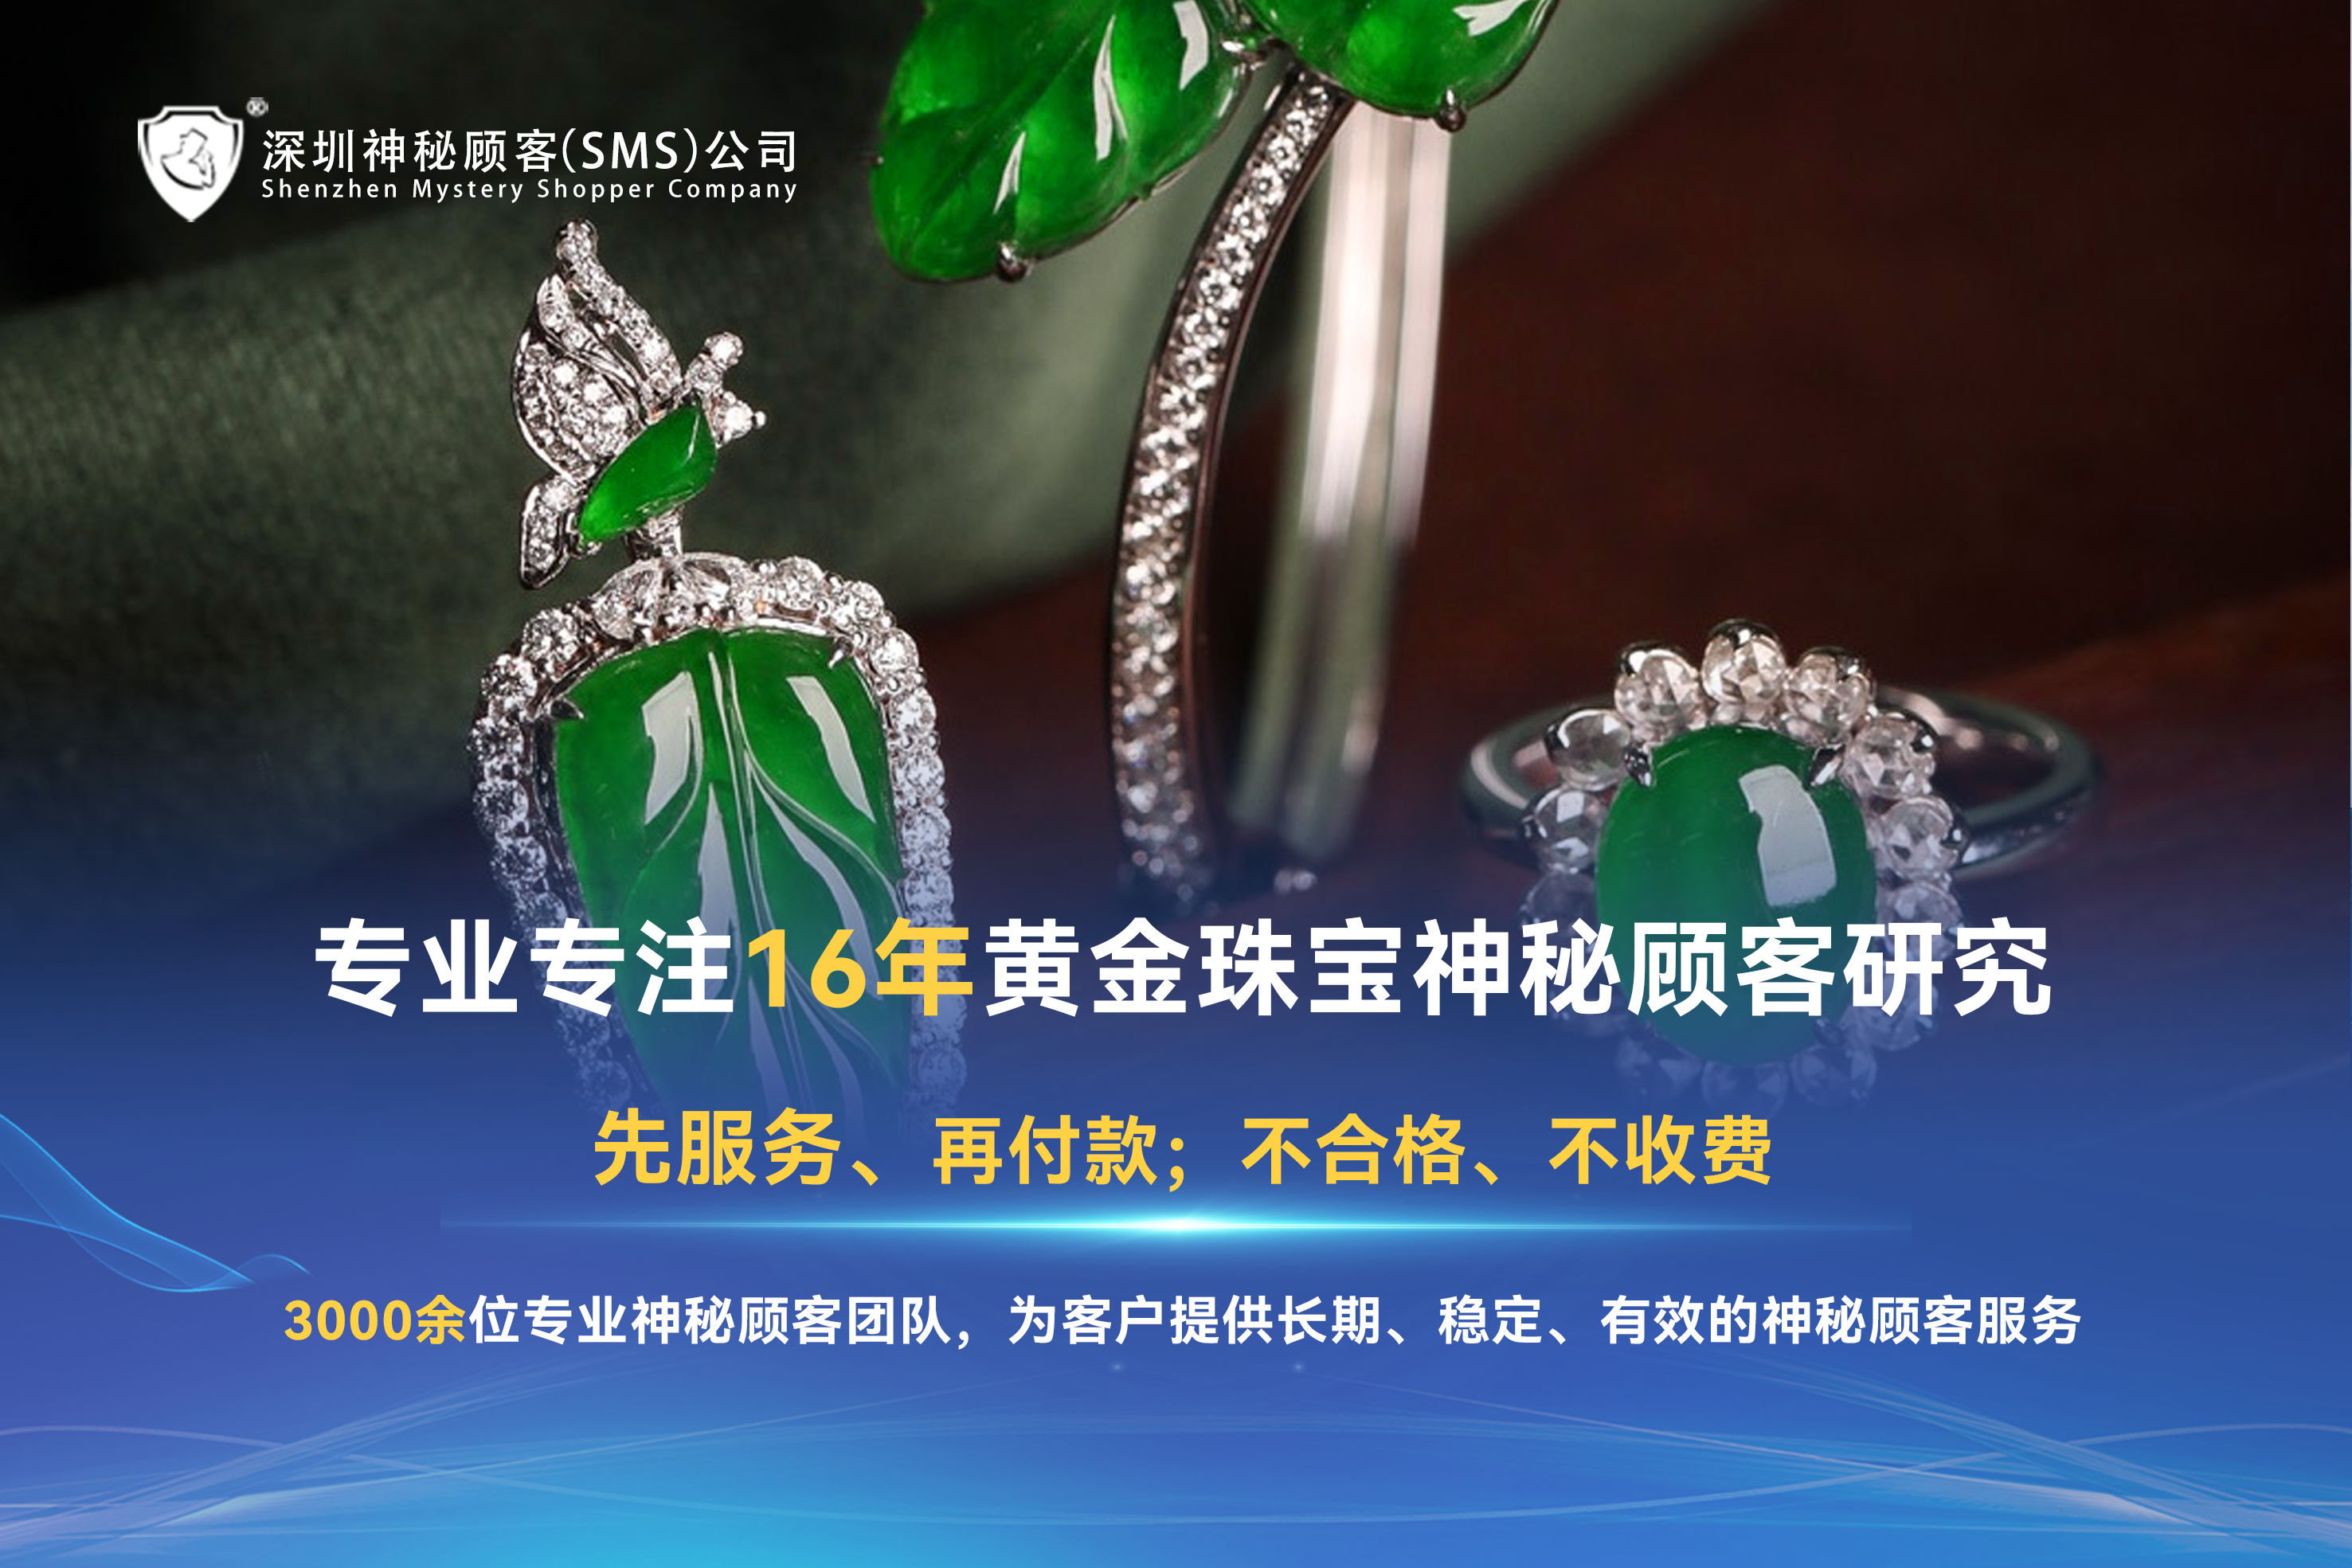 神秘人暗访：广州珠宝行业神秘顾客调查注意事项